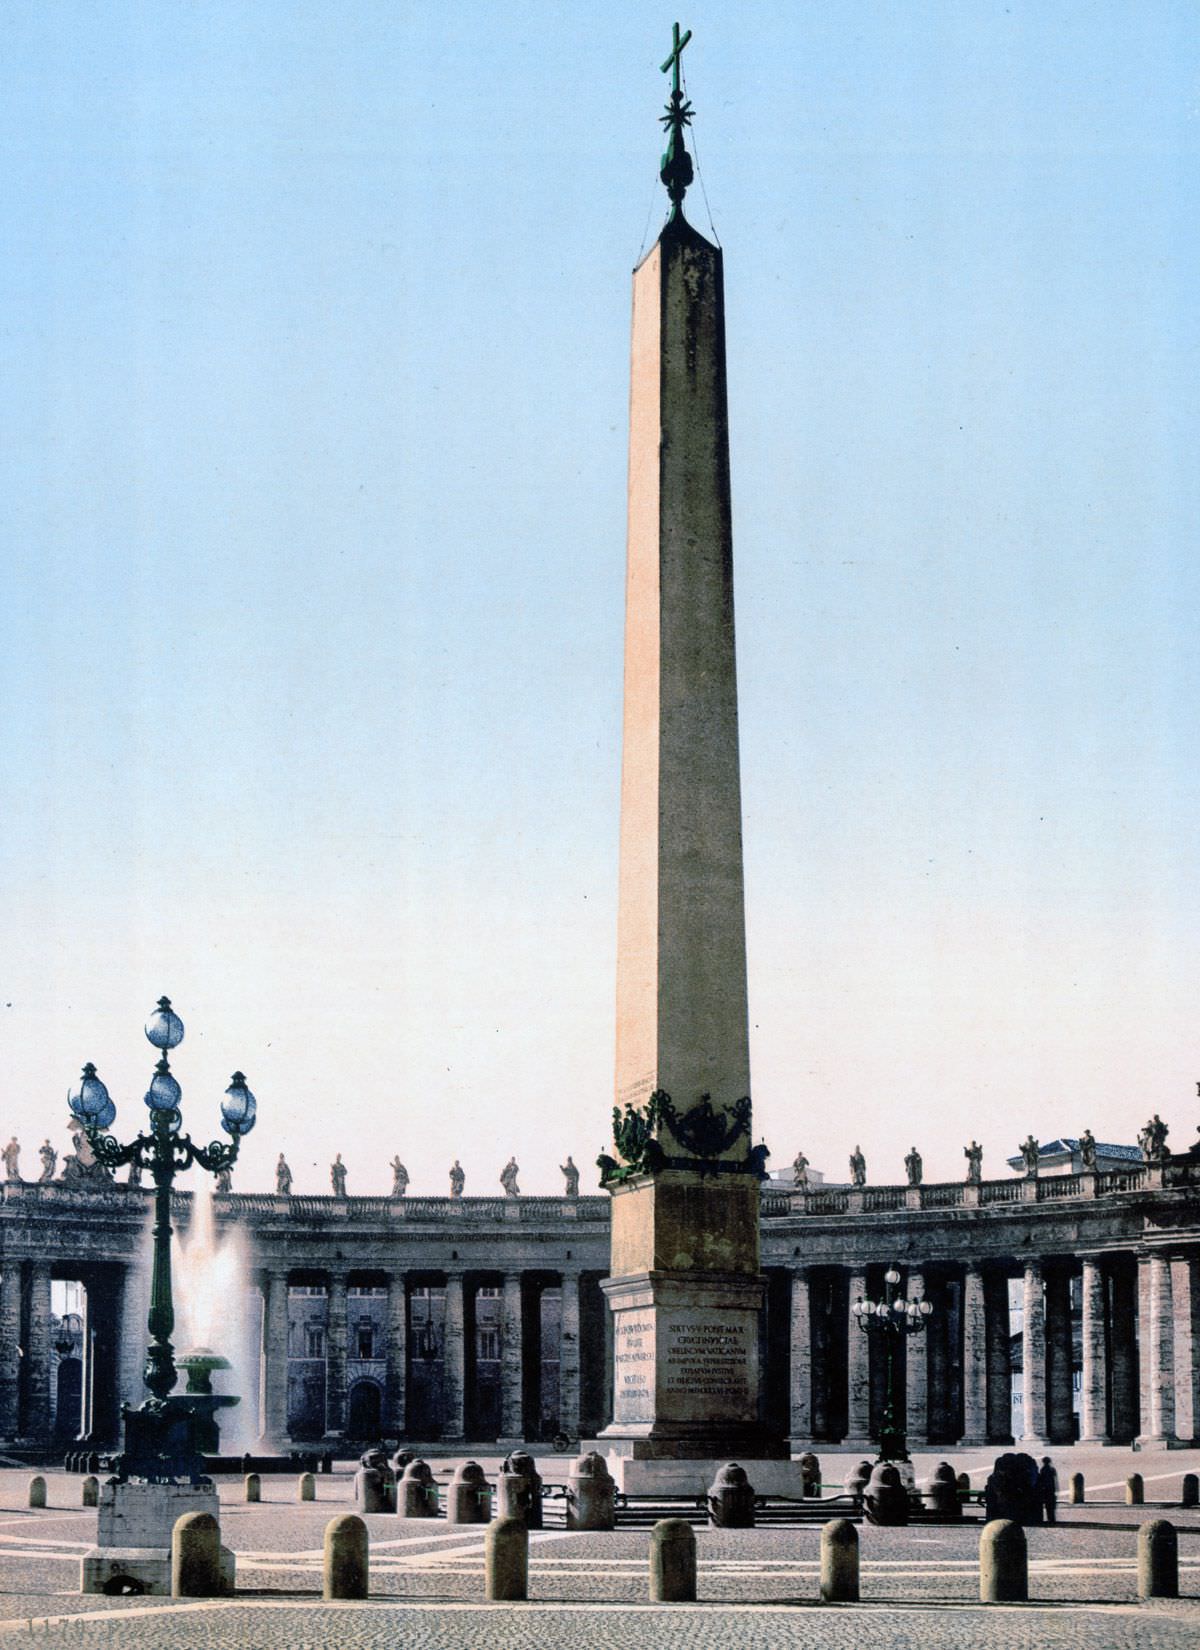 The Piazza del Popolo.